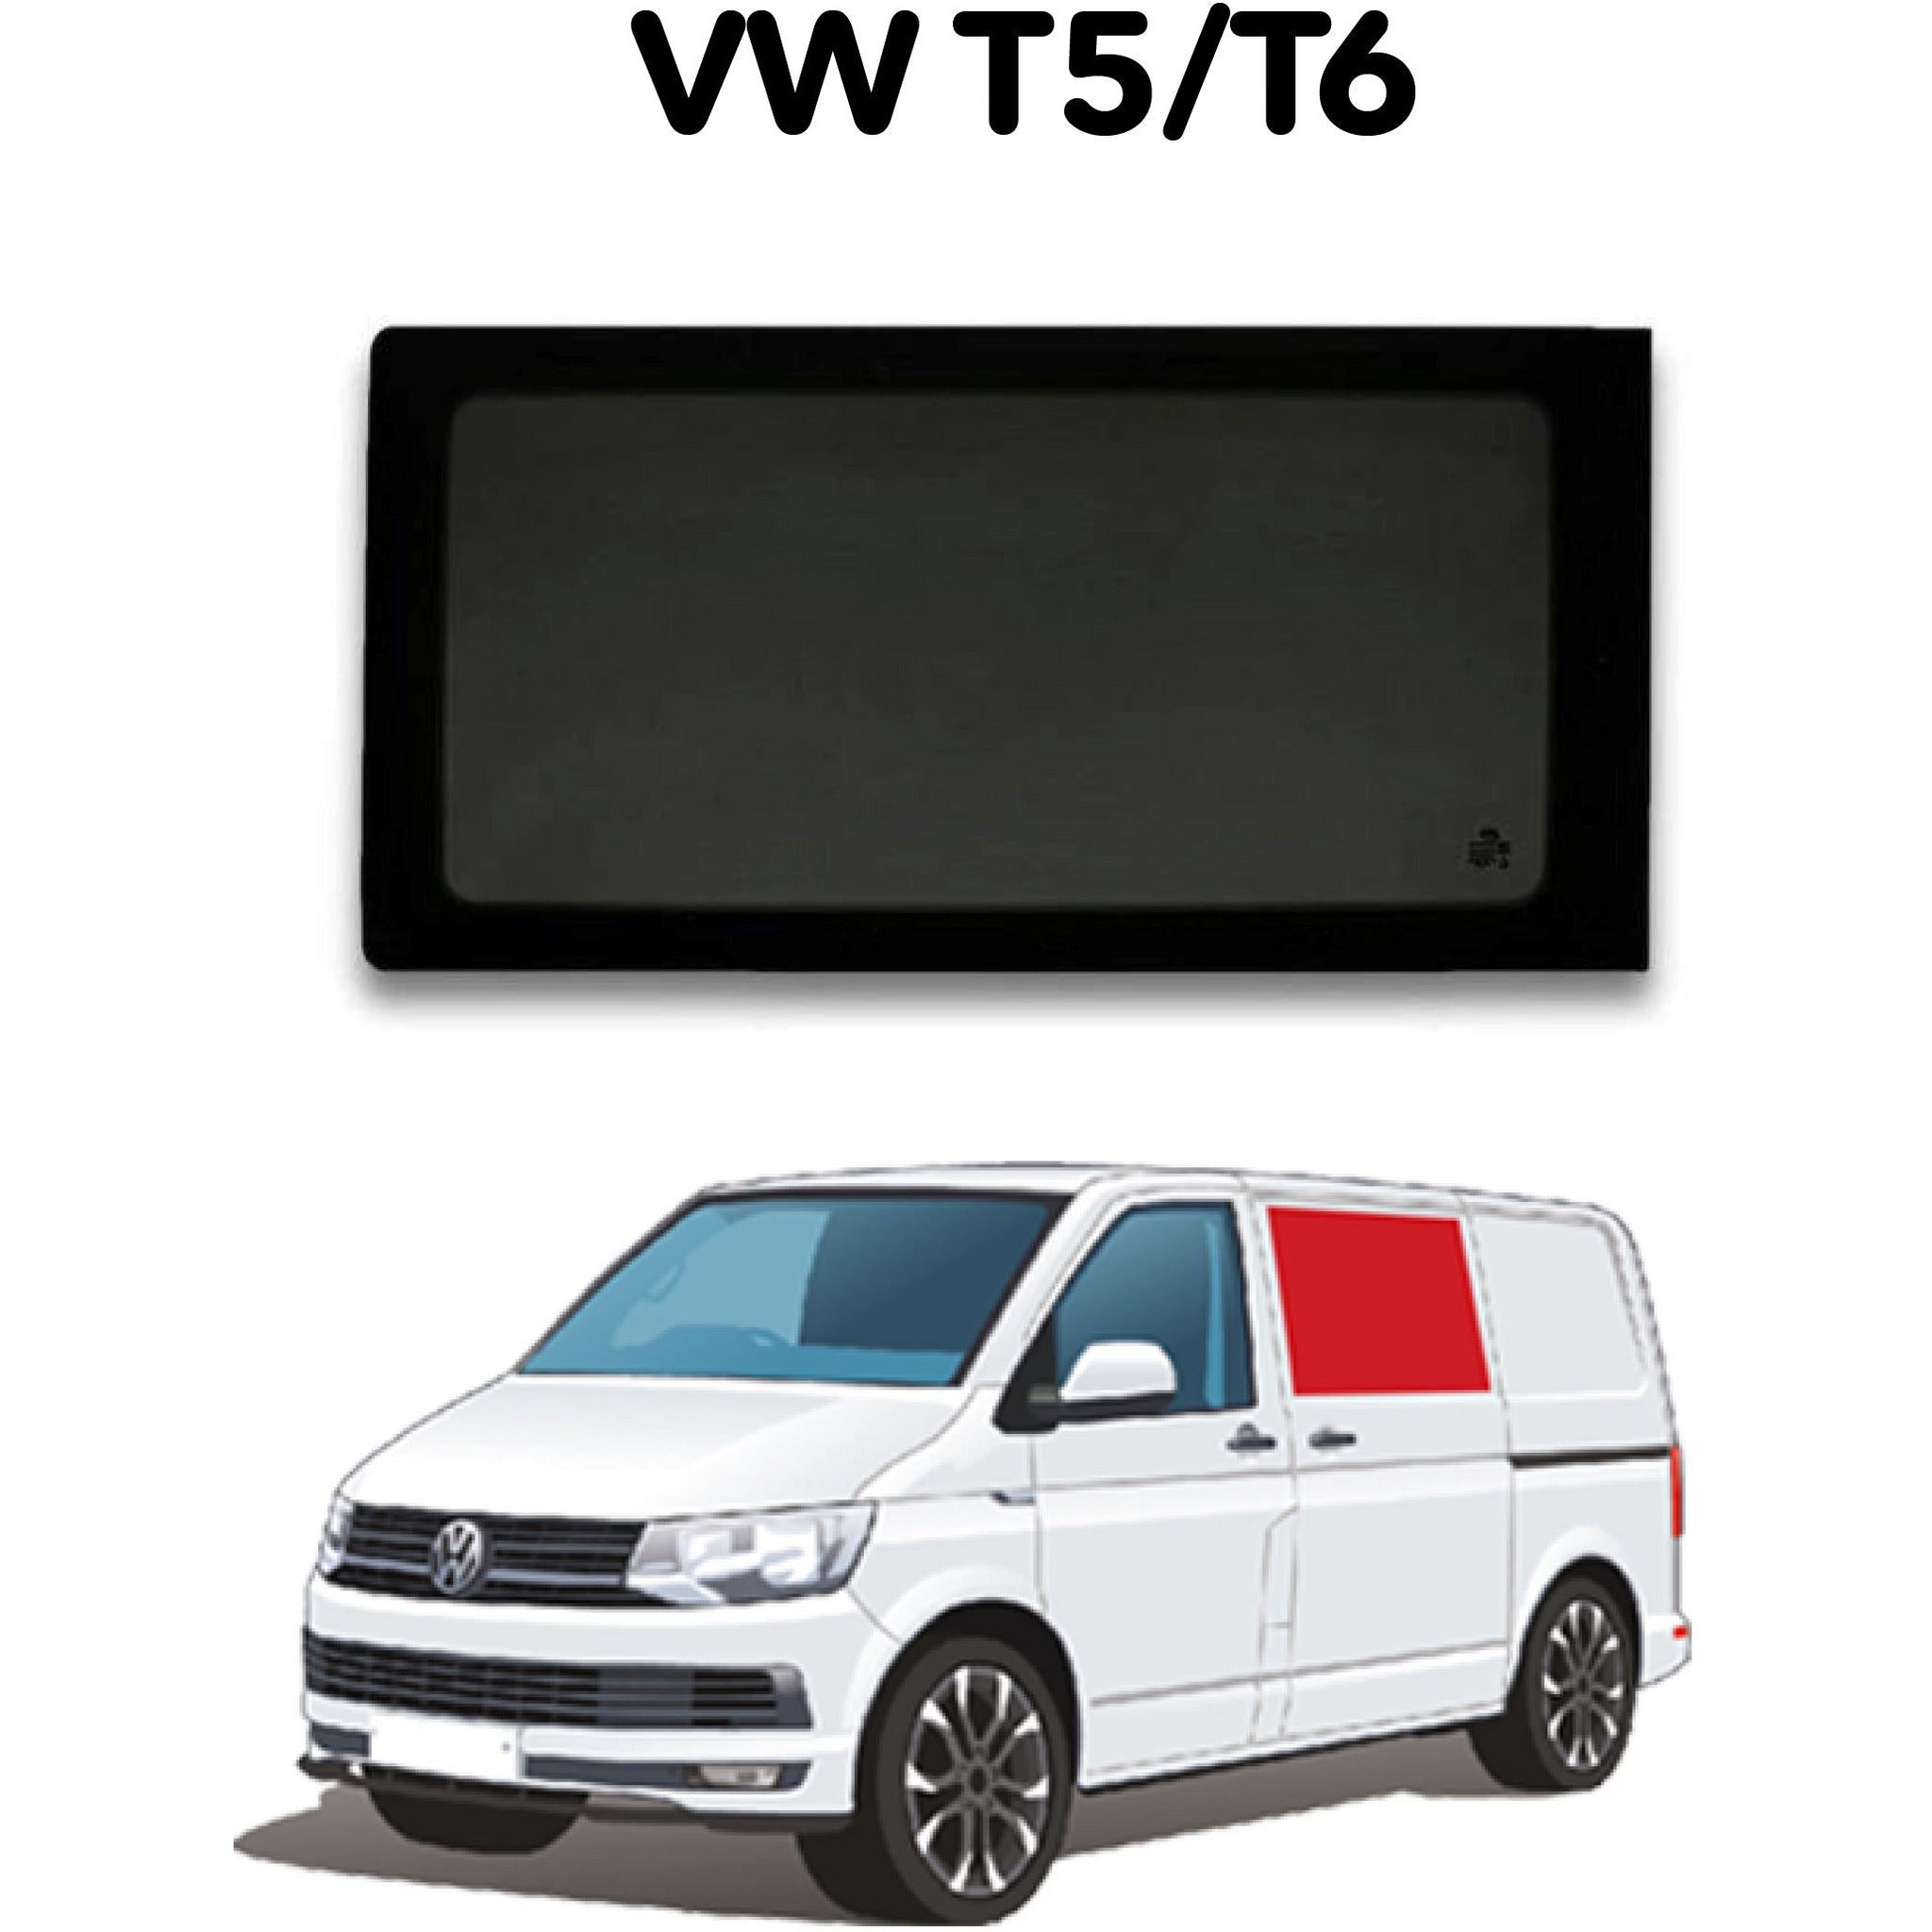 Left Fixed Window VW T5 / T6 - Sliding Door P2S Camper Glass by Kiravans 